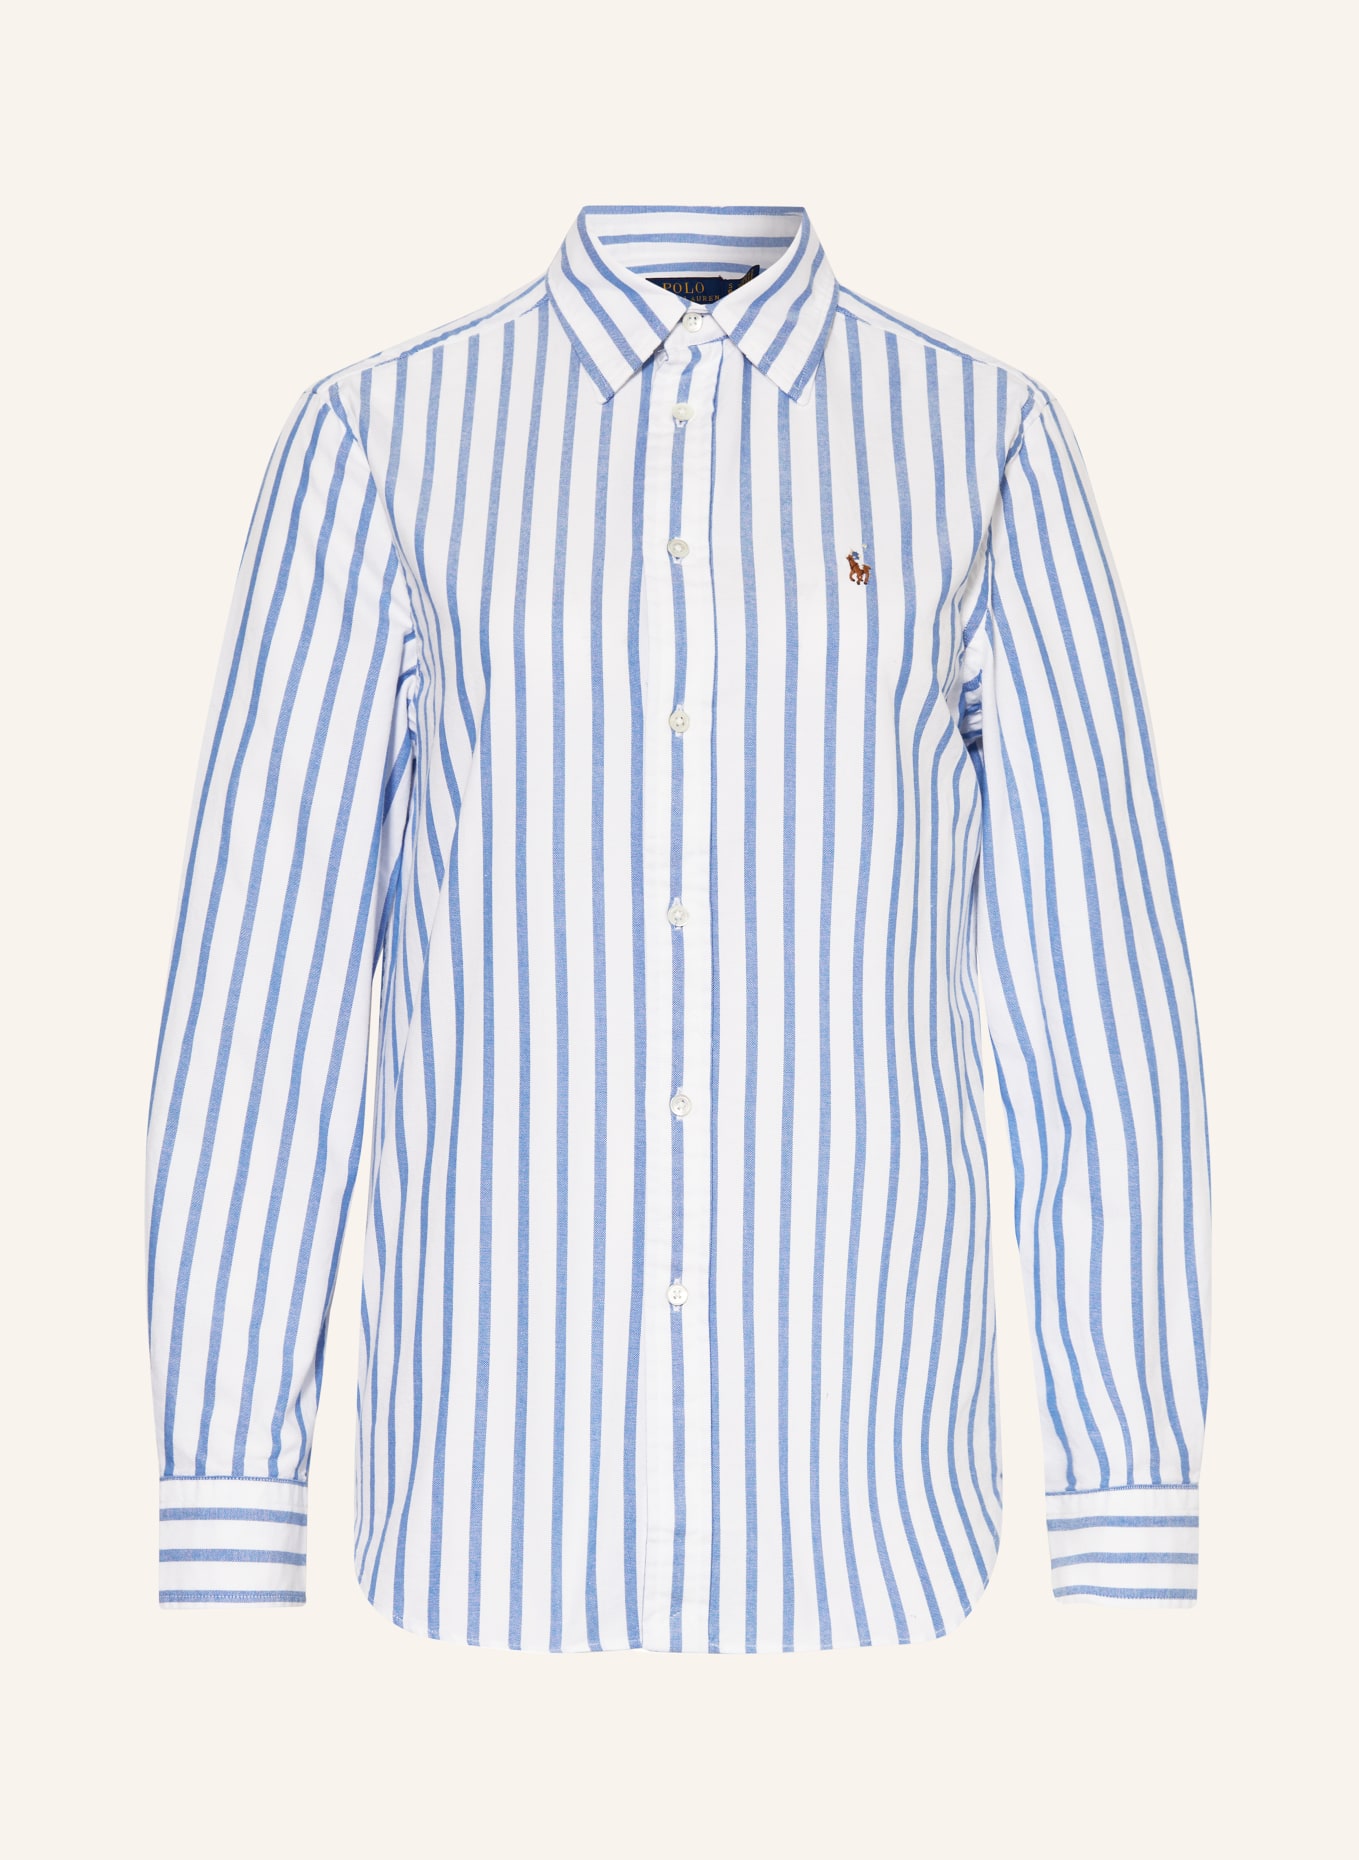 POLO RALPH LAUREN Shirt blouse, Color: WHITE/ LIGHT BLUE (Image 1)